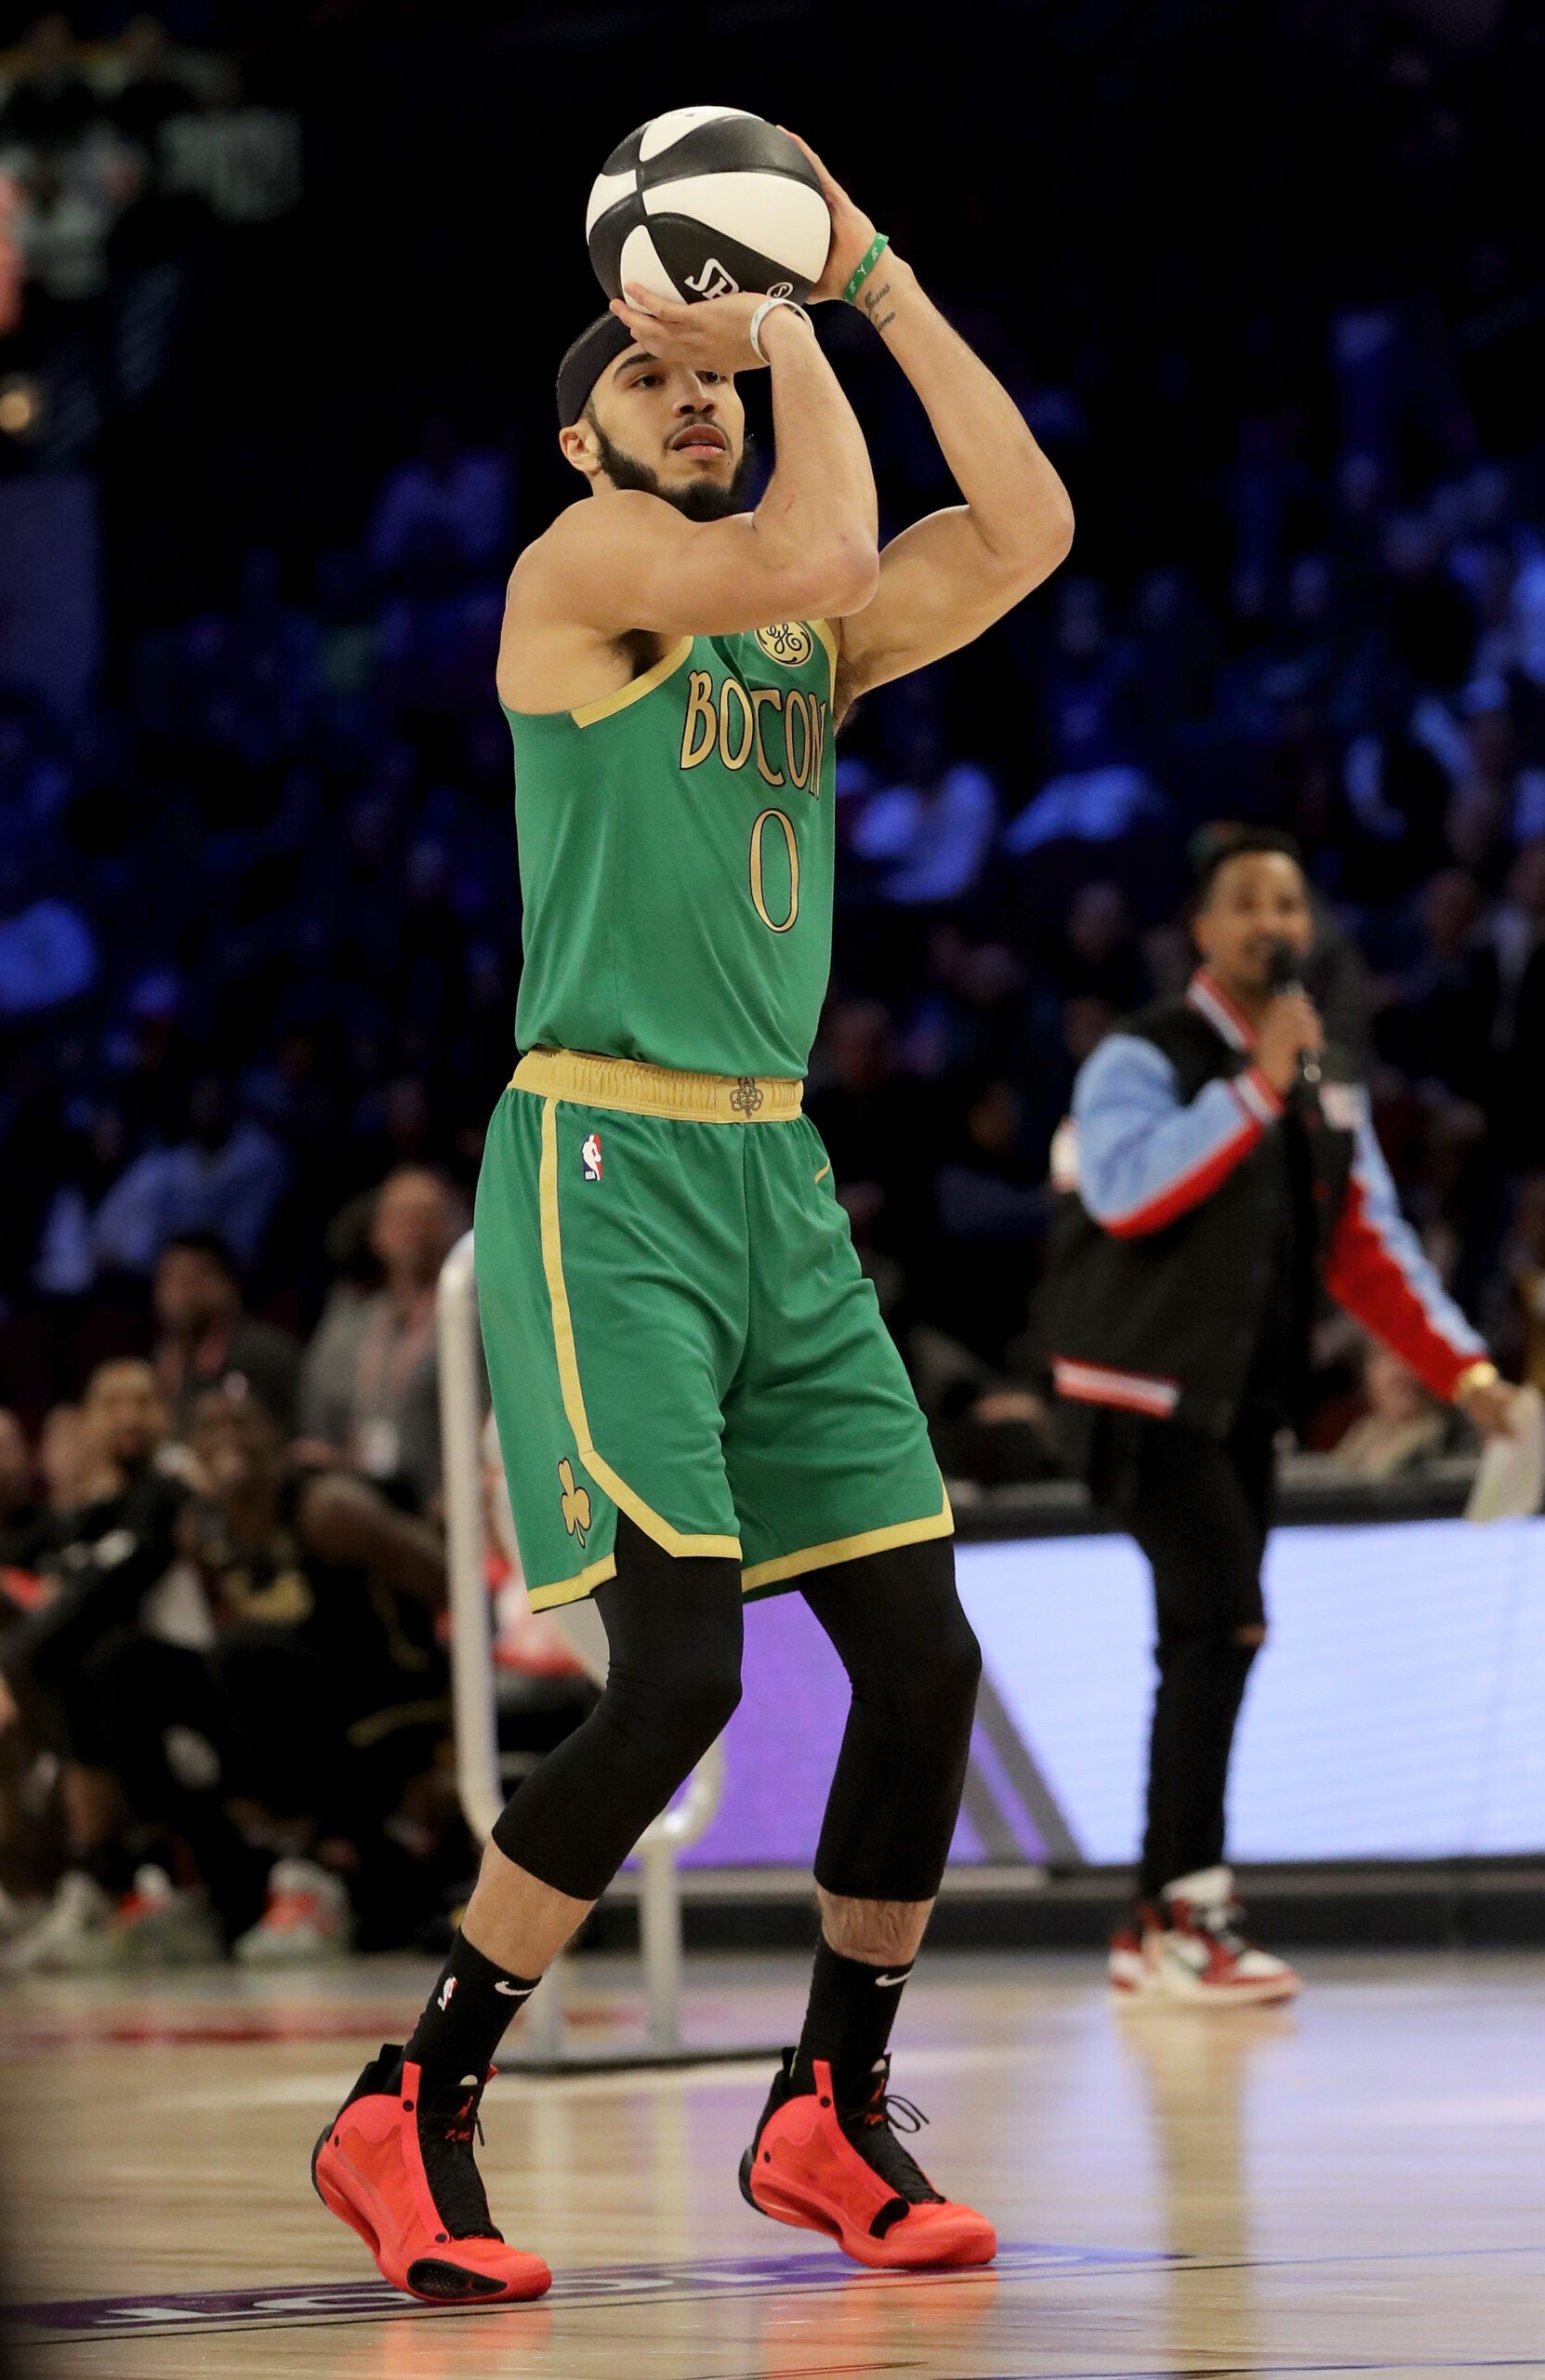 Jordan Brand to release signature shoe for Boston Celtics star Jayson Tatum  : r/nba